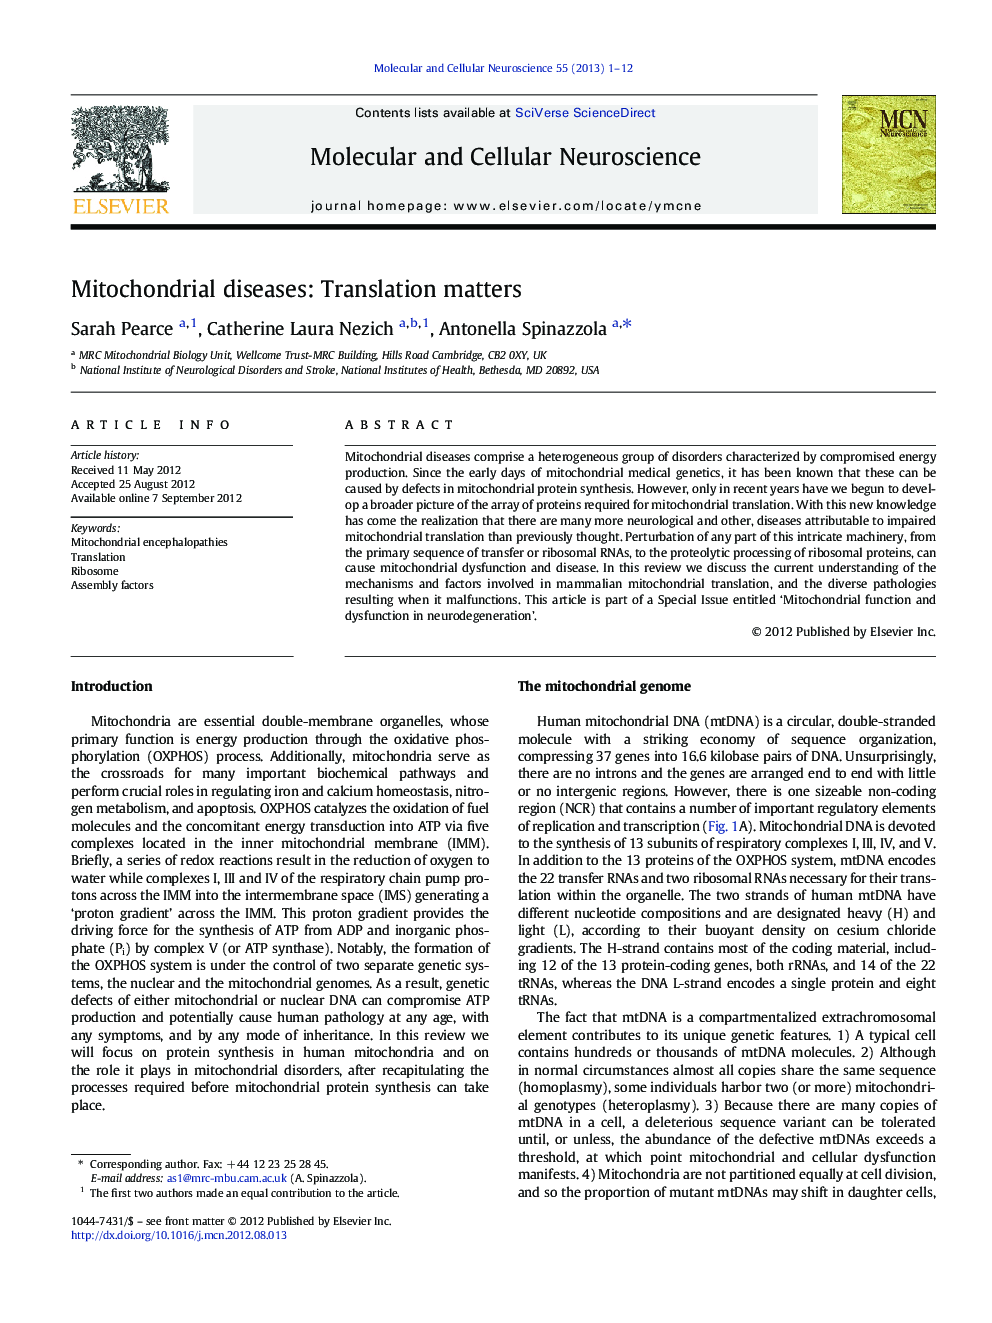 بیماری های میتوکندری: مسائل مربوط به ترجمه 